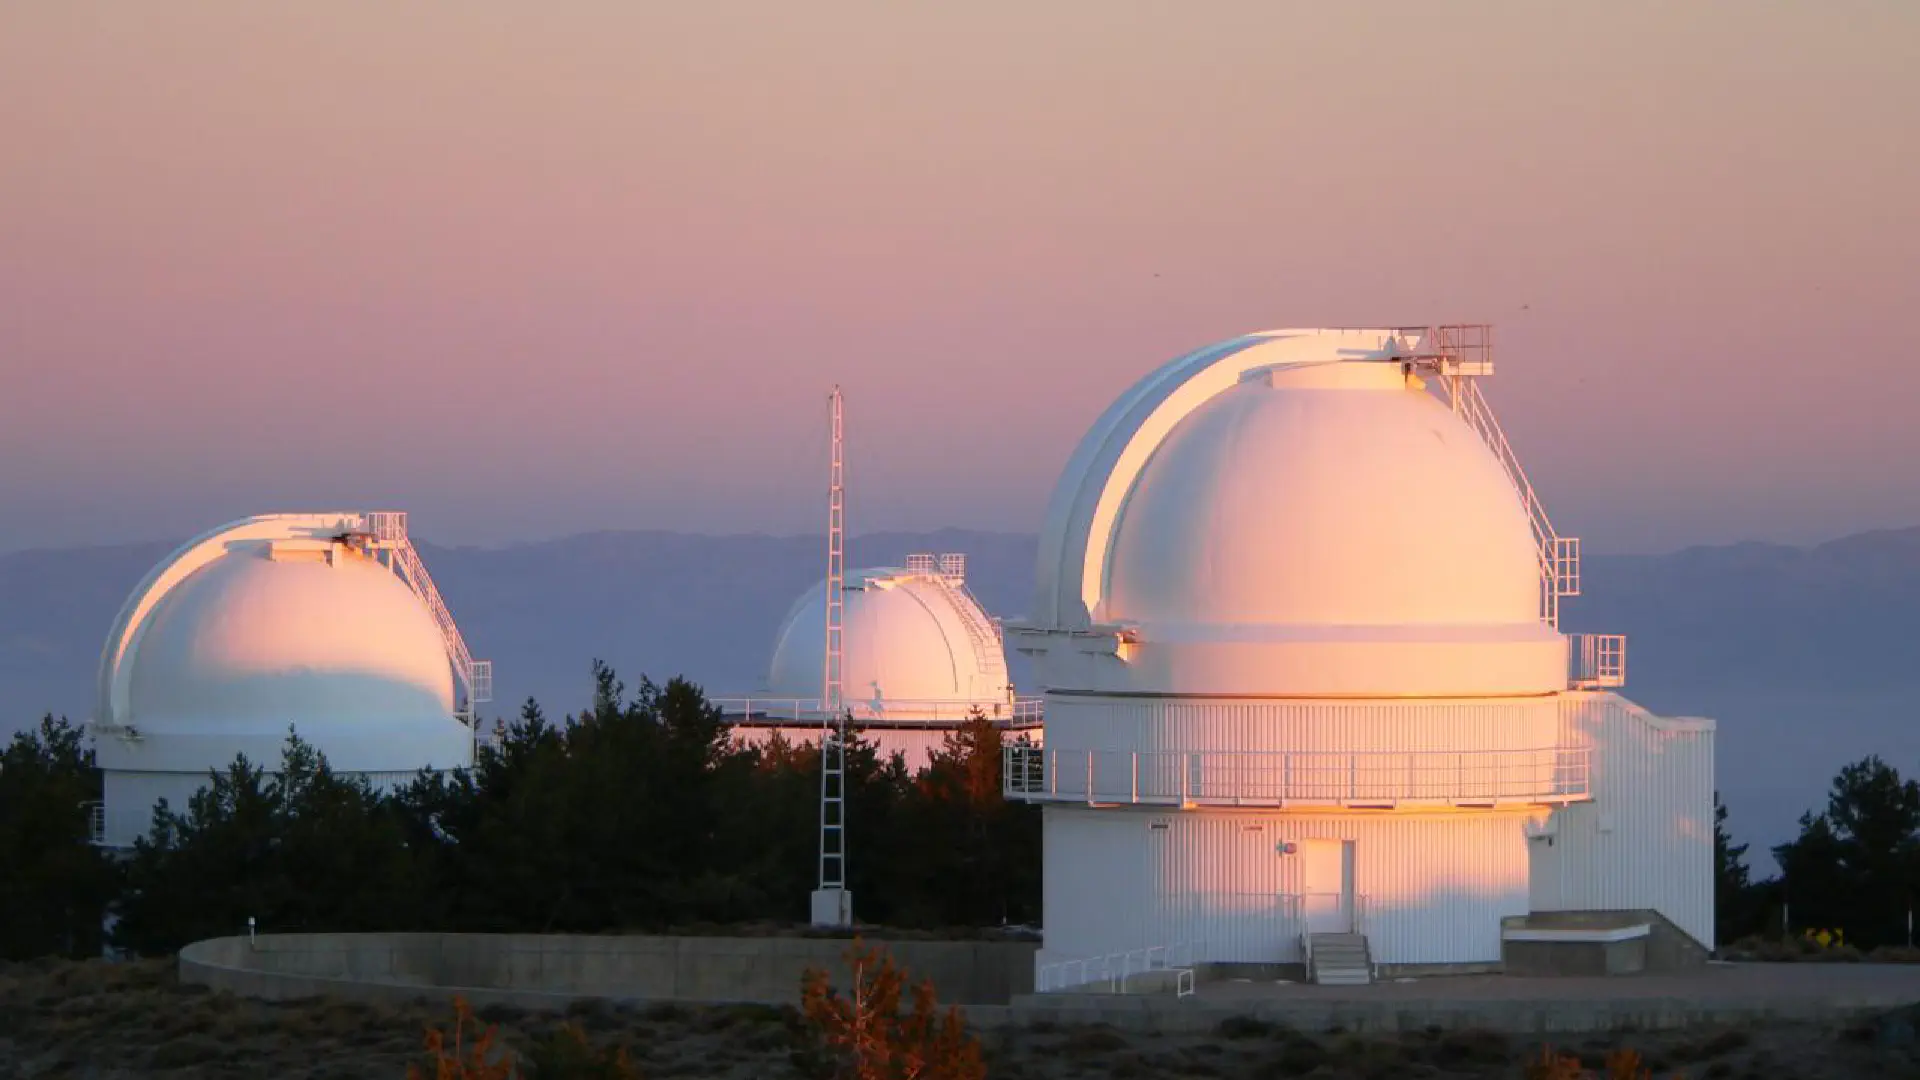 Calar Alto Observatory (CAHA)